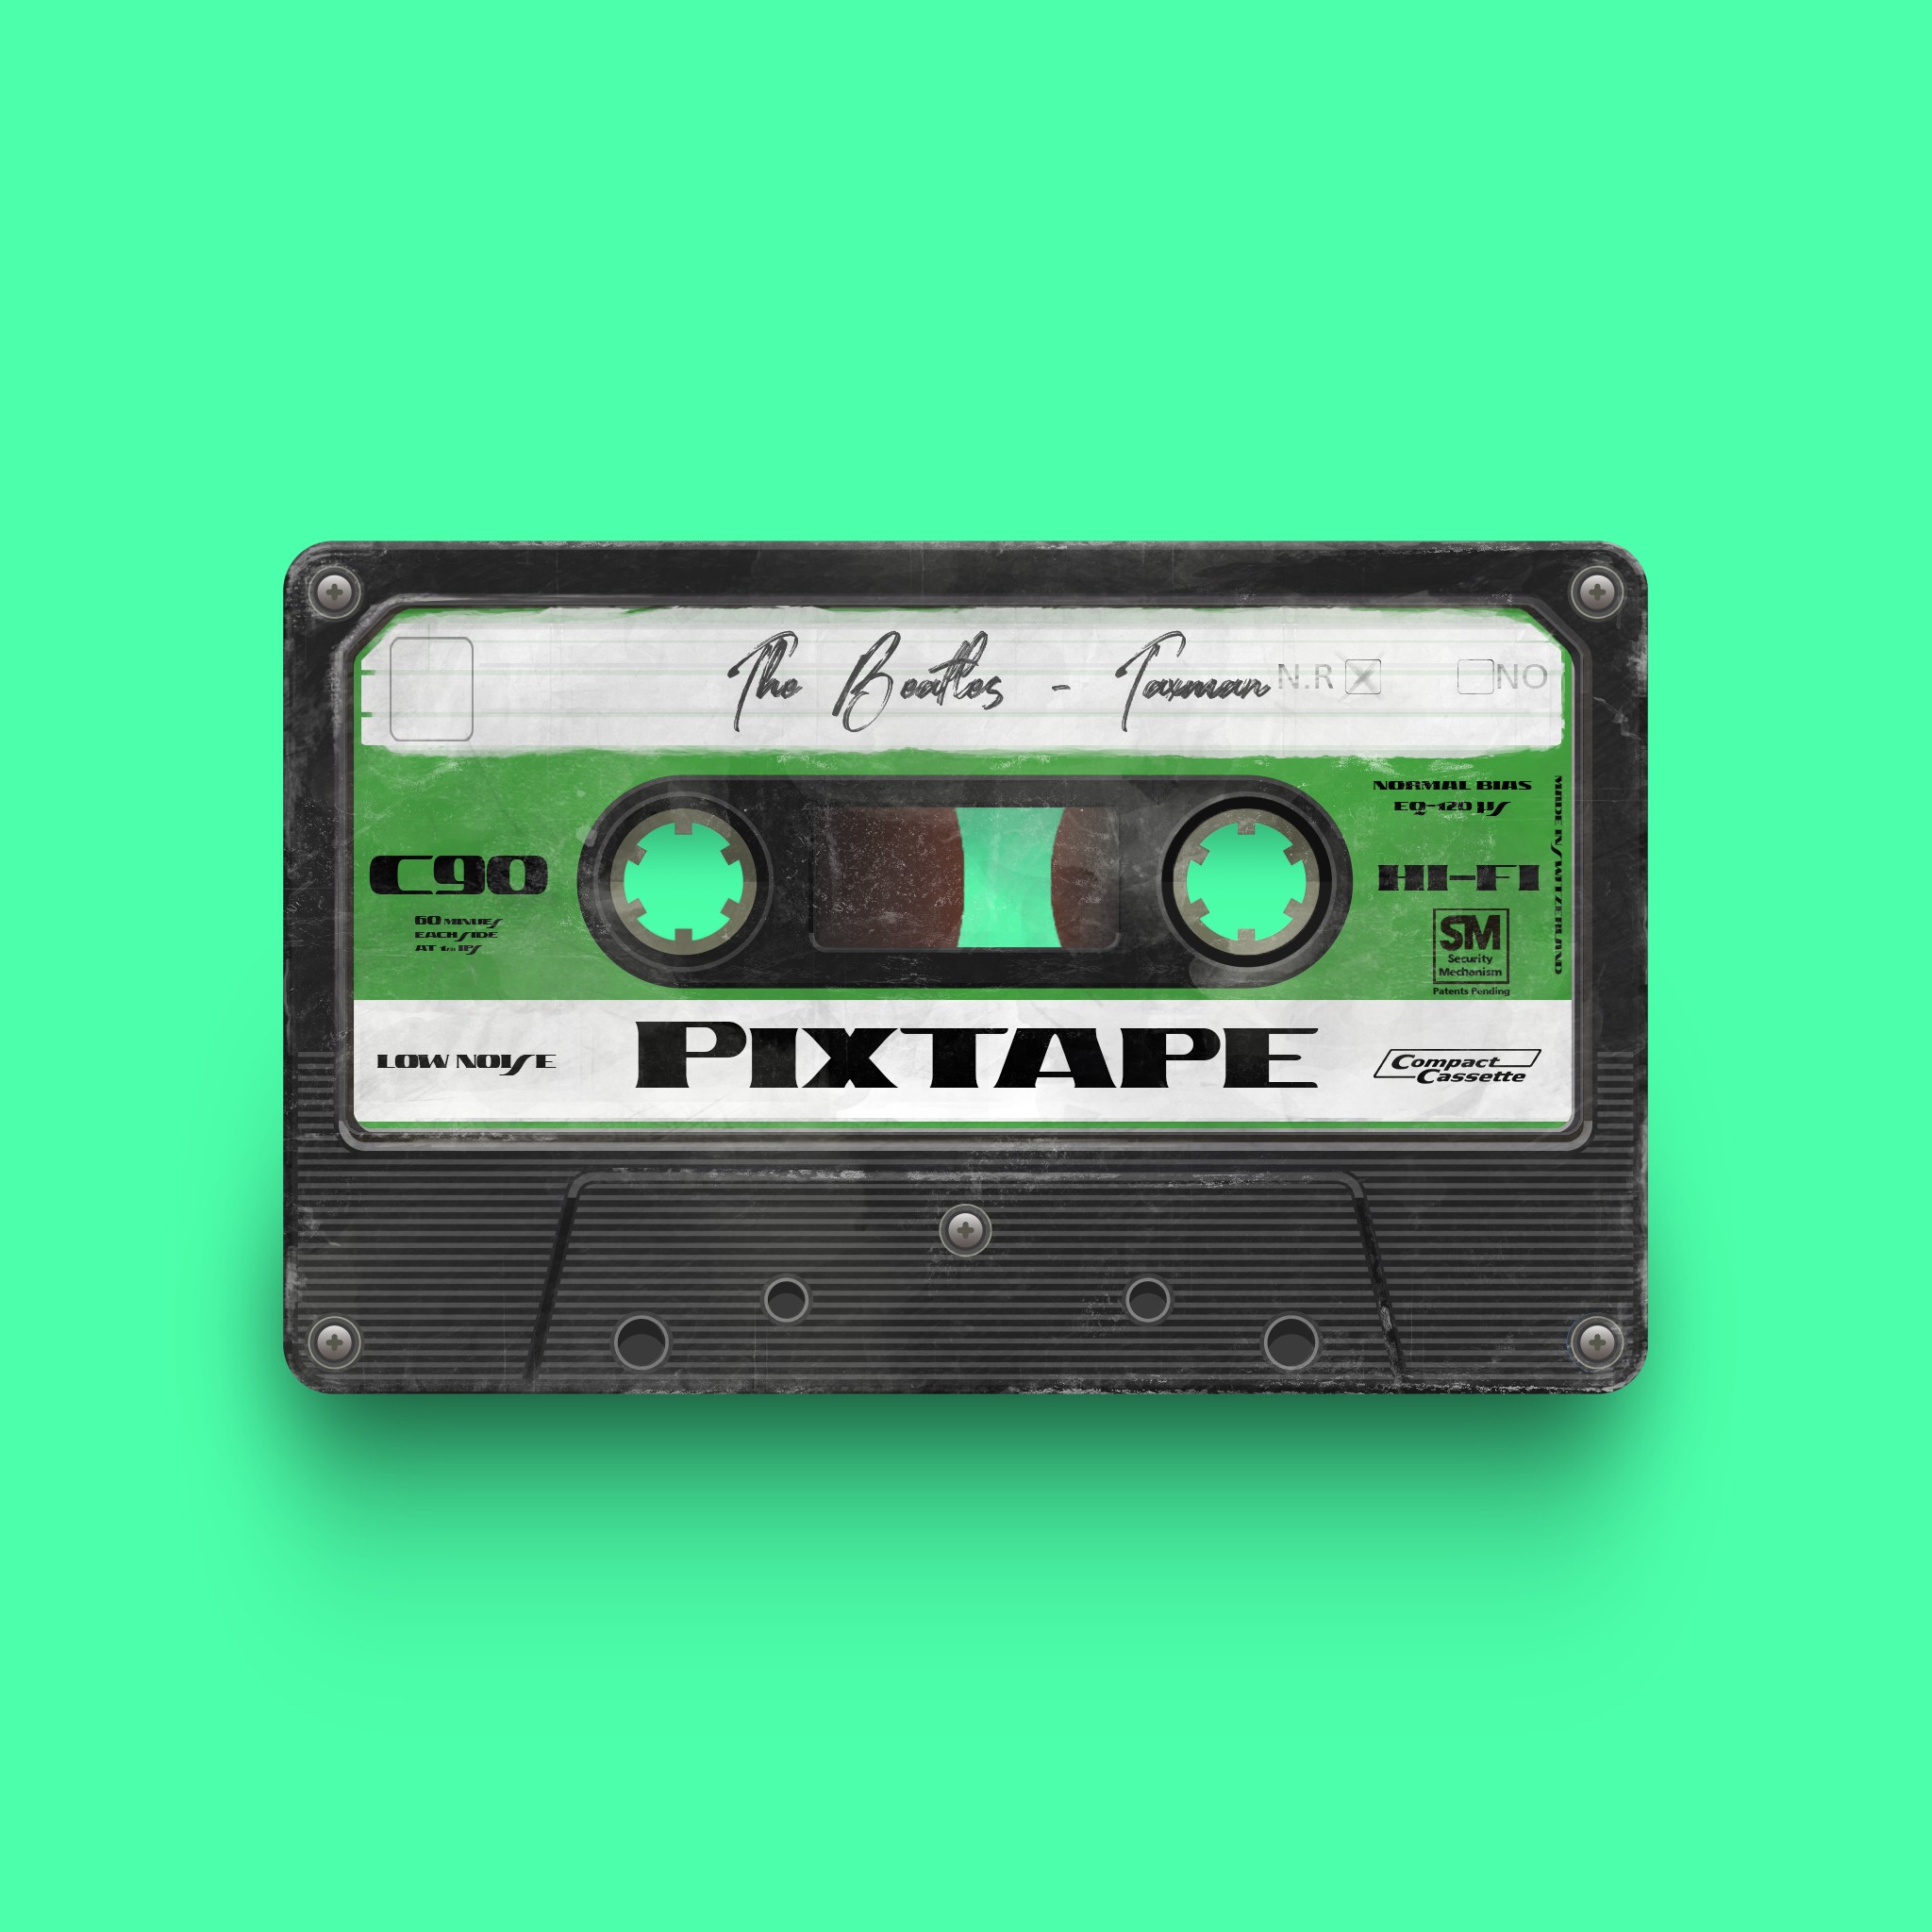 PixTape #0 | The Beatles - Taxman